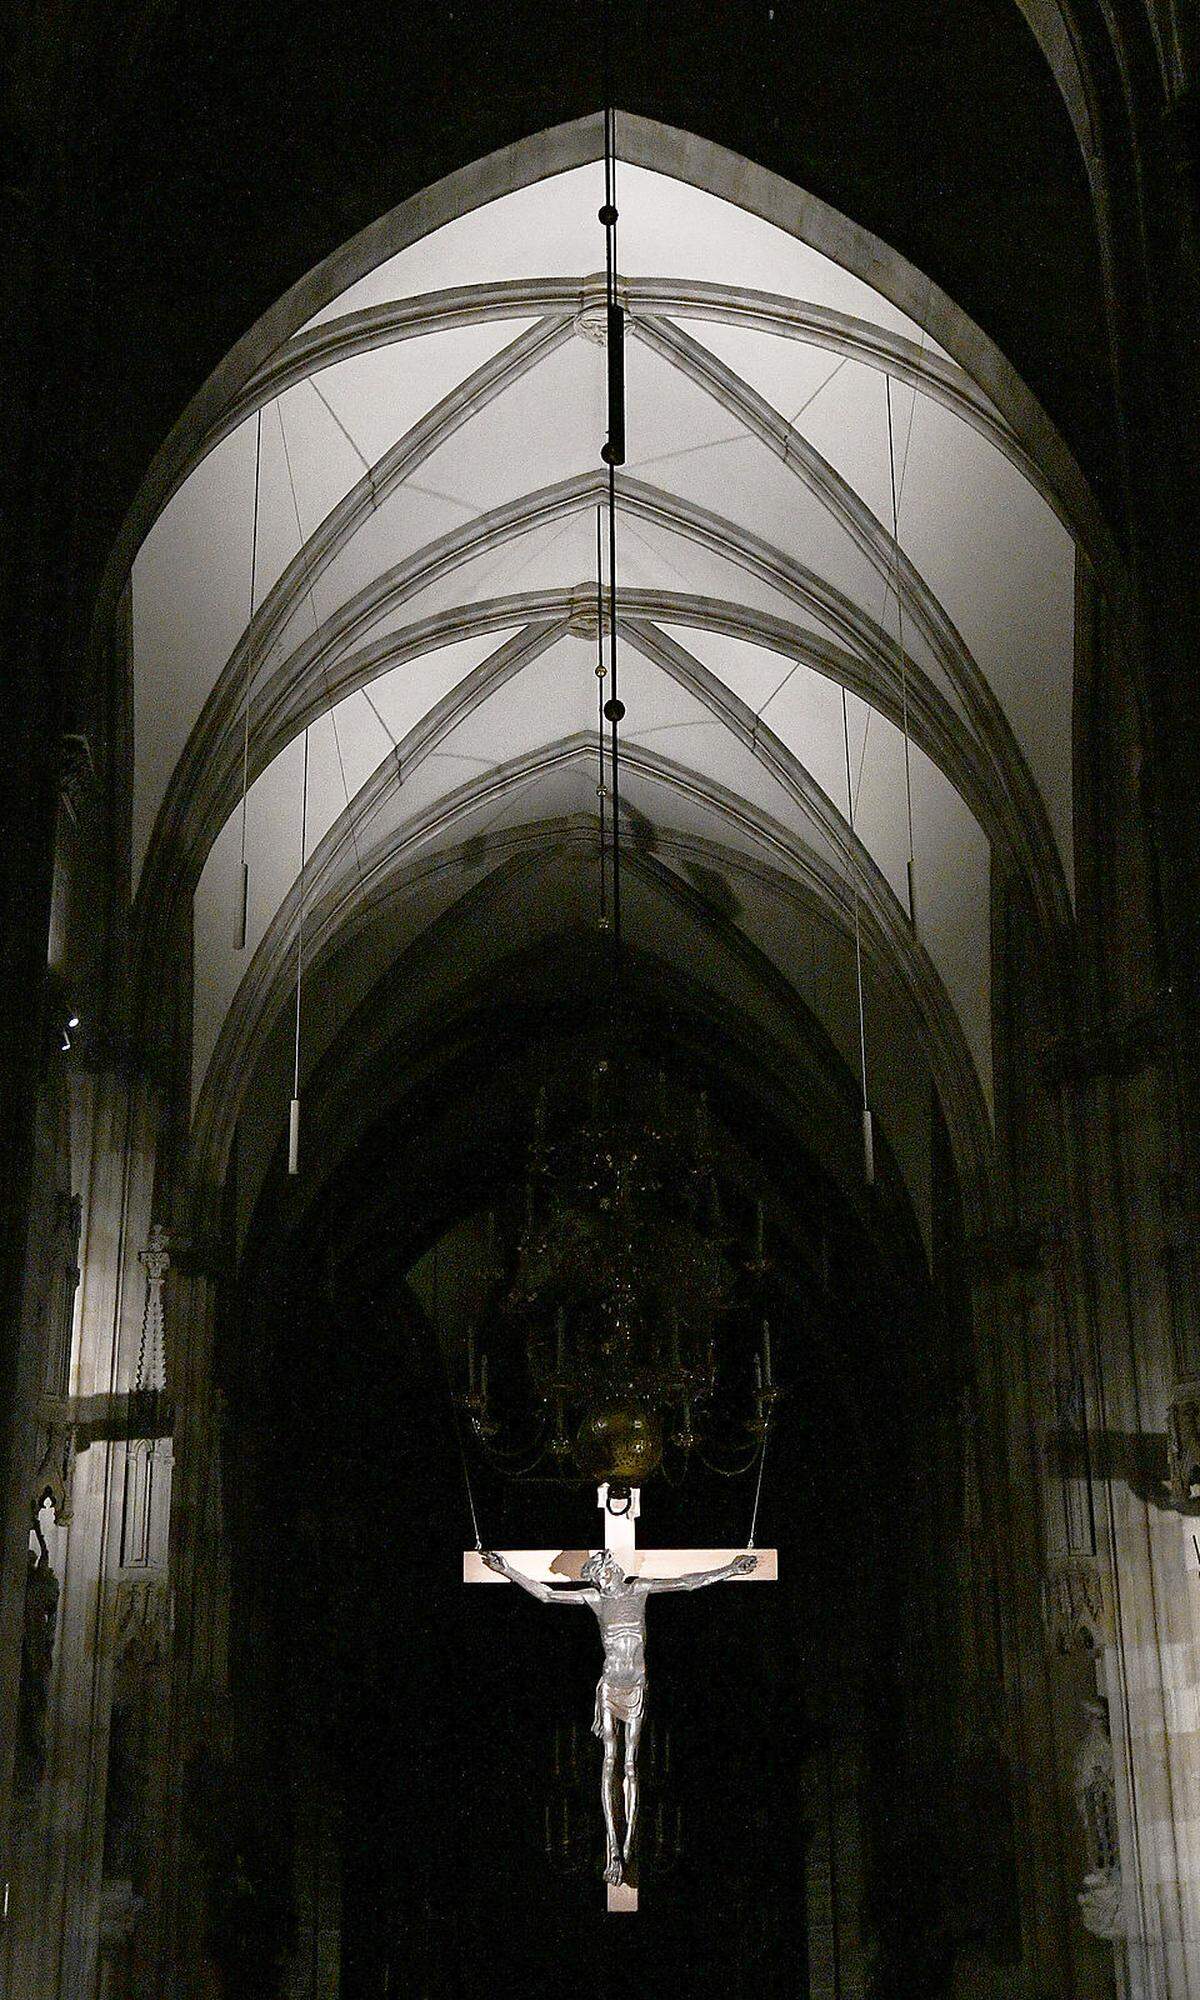 Für den Dombaumeister Wolfgang Zehetner bedeutet die Beleuchtung einen "neuen Meilenstein in der Darstellung des Doms". Als Architekt ging er auf den gotischen Baustil des Stephansdoms ein.